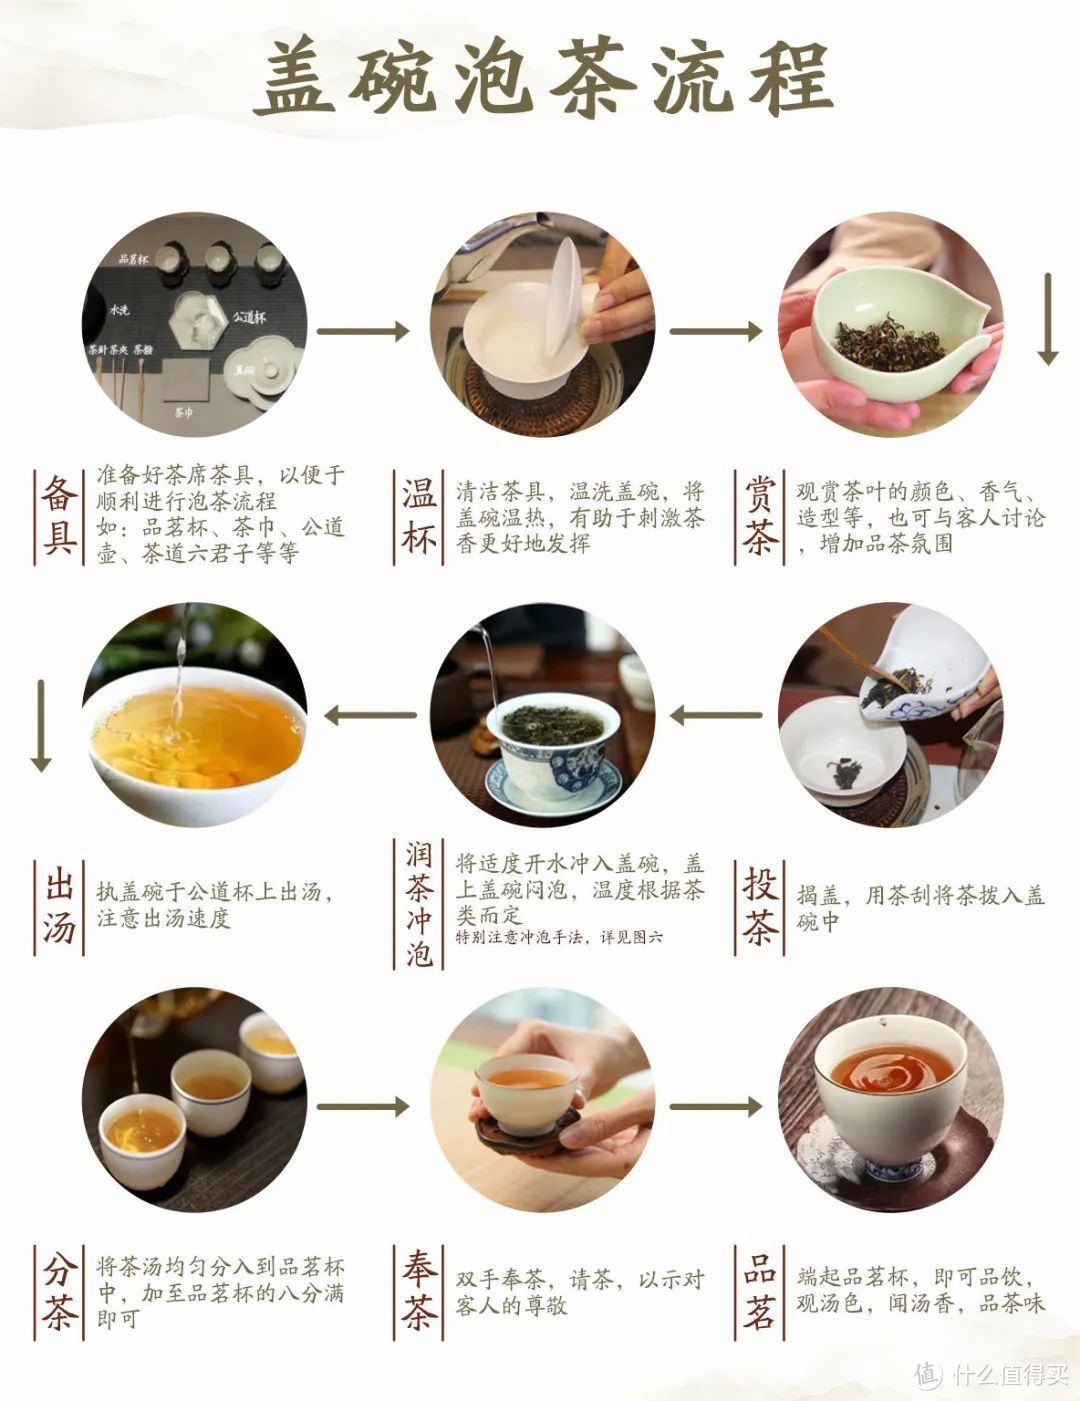 盖碗泡茶流程图示